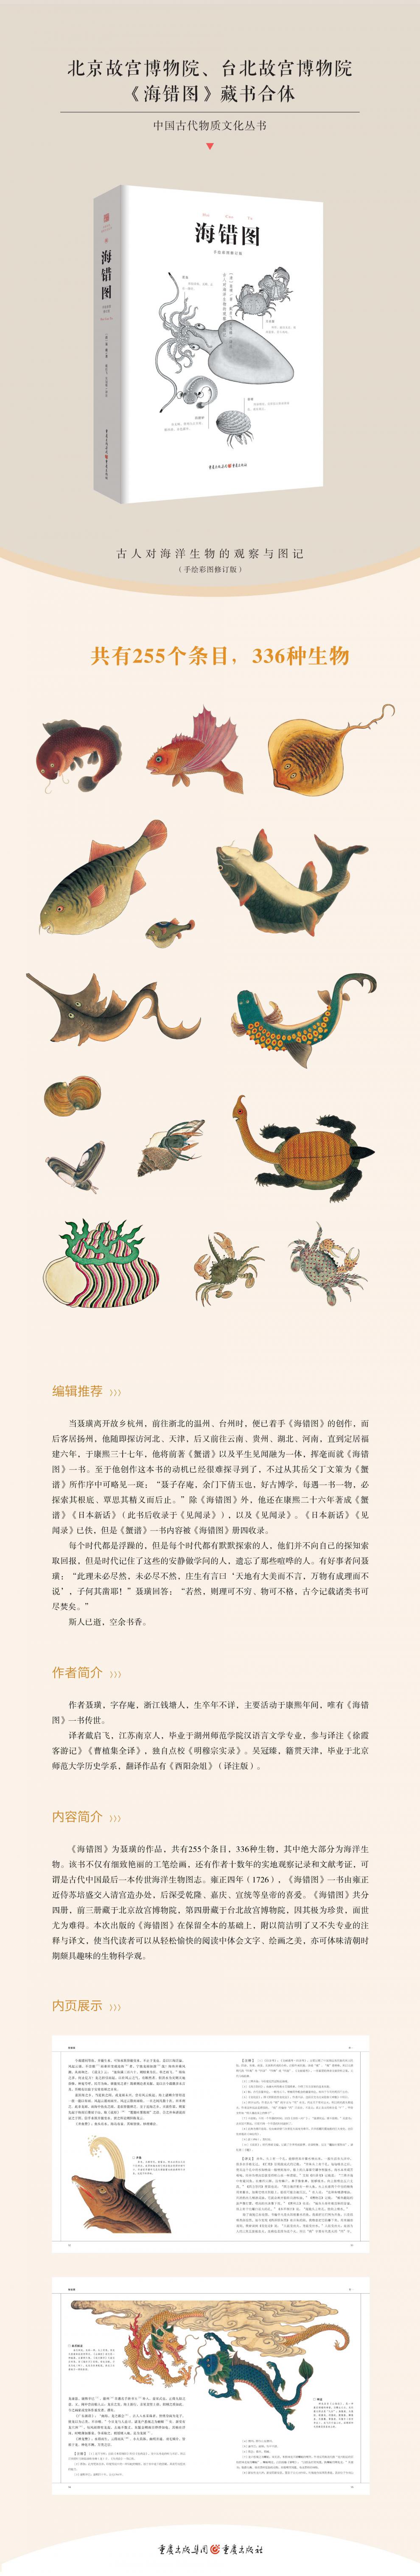 海错图中国古代物质文化丛书注释译文故宫彩图版明代海洋生物图鉴336